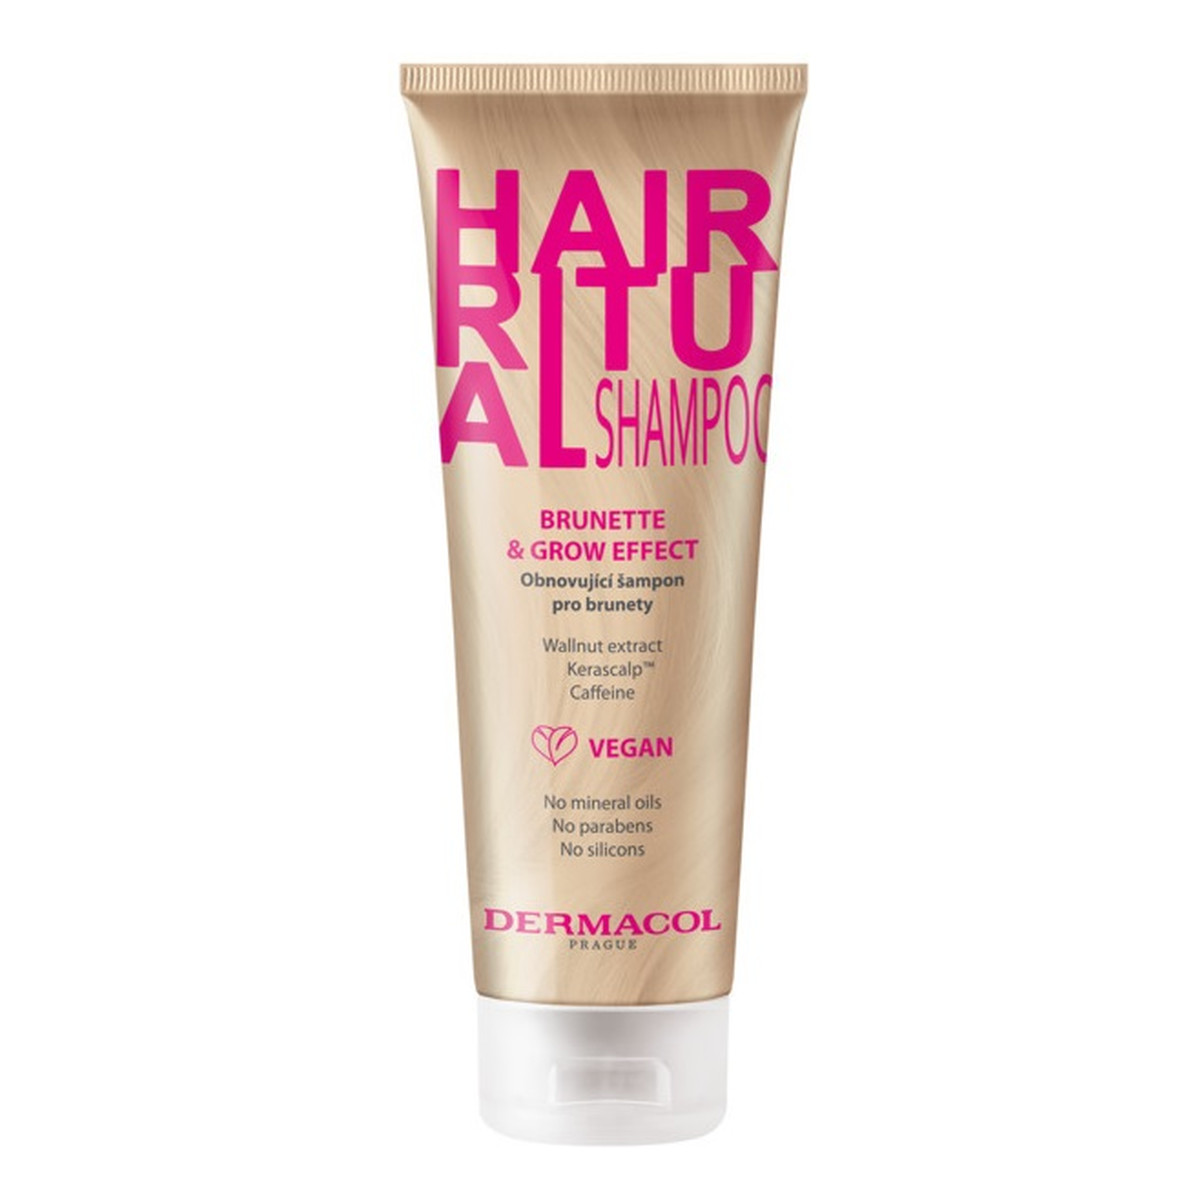 Dermacol Hair ritual shampoo szampon włosów brunette & grow effect 250ml